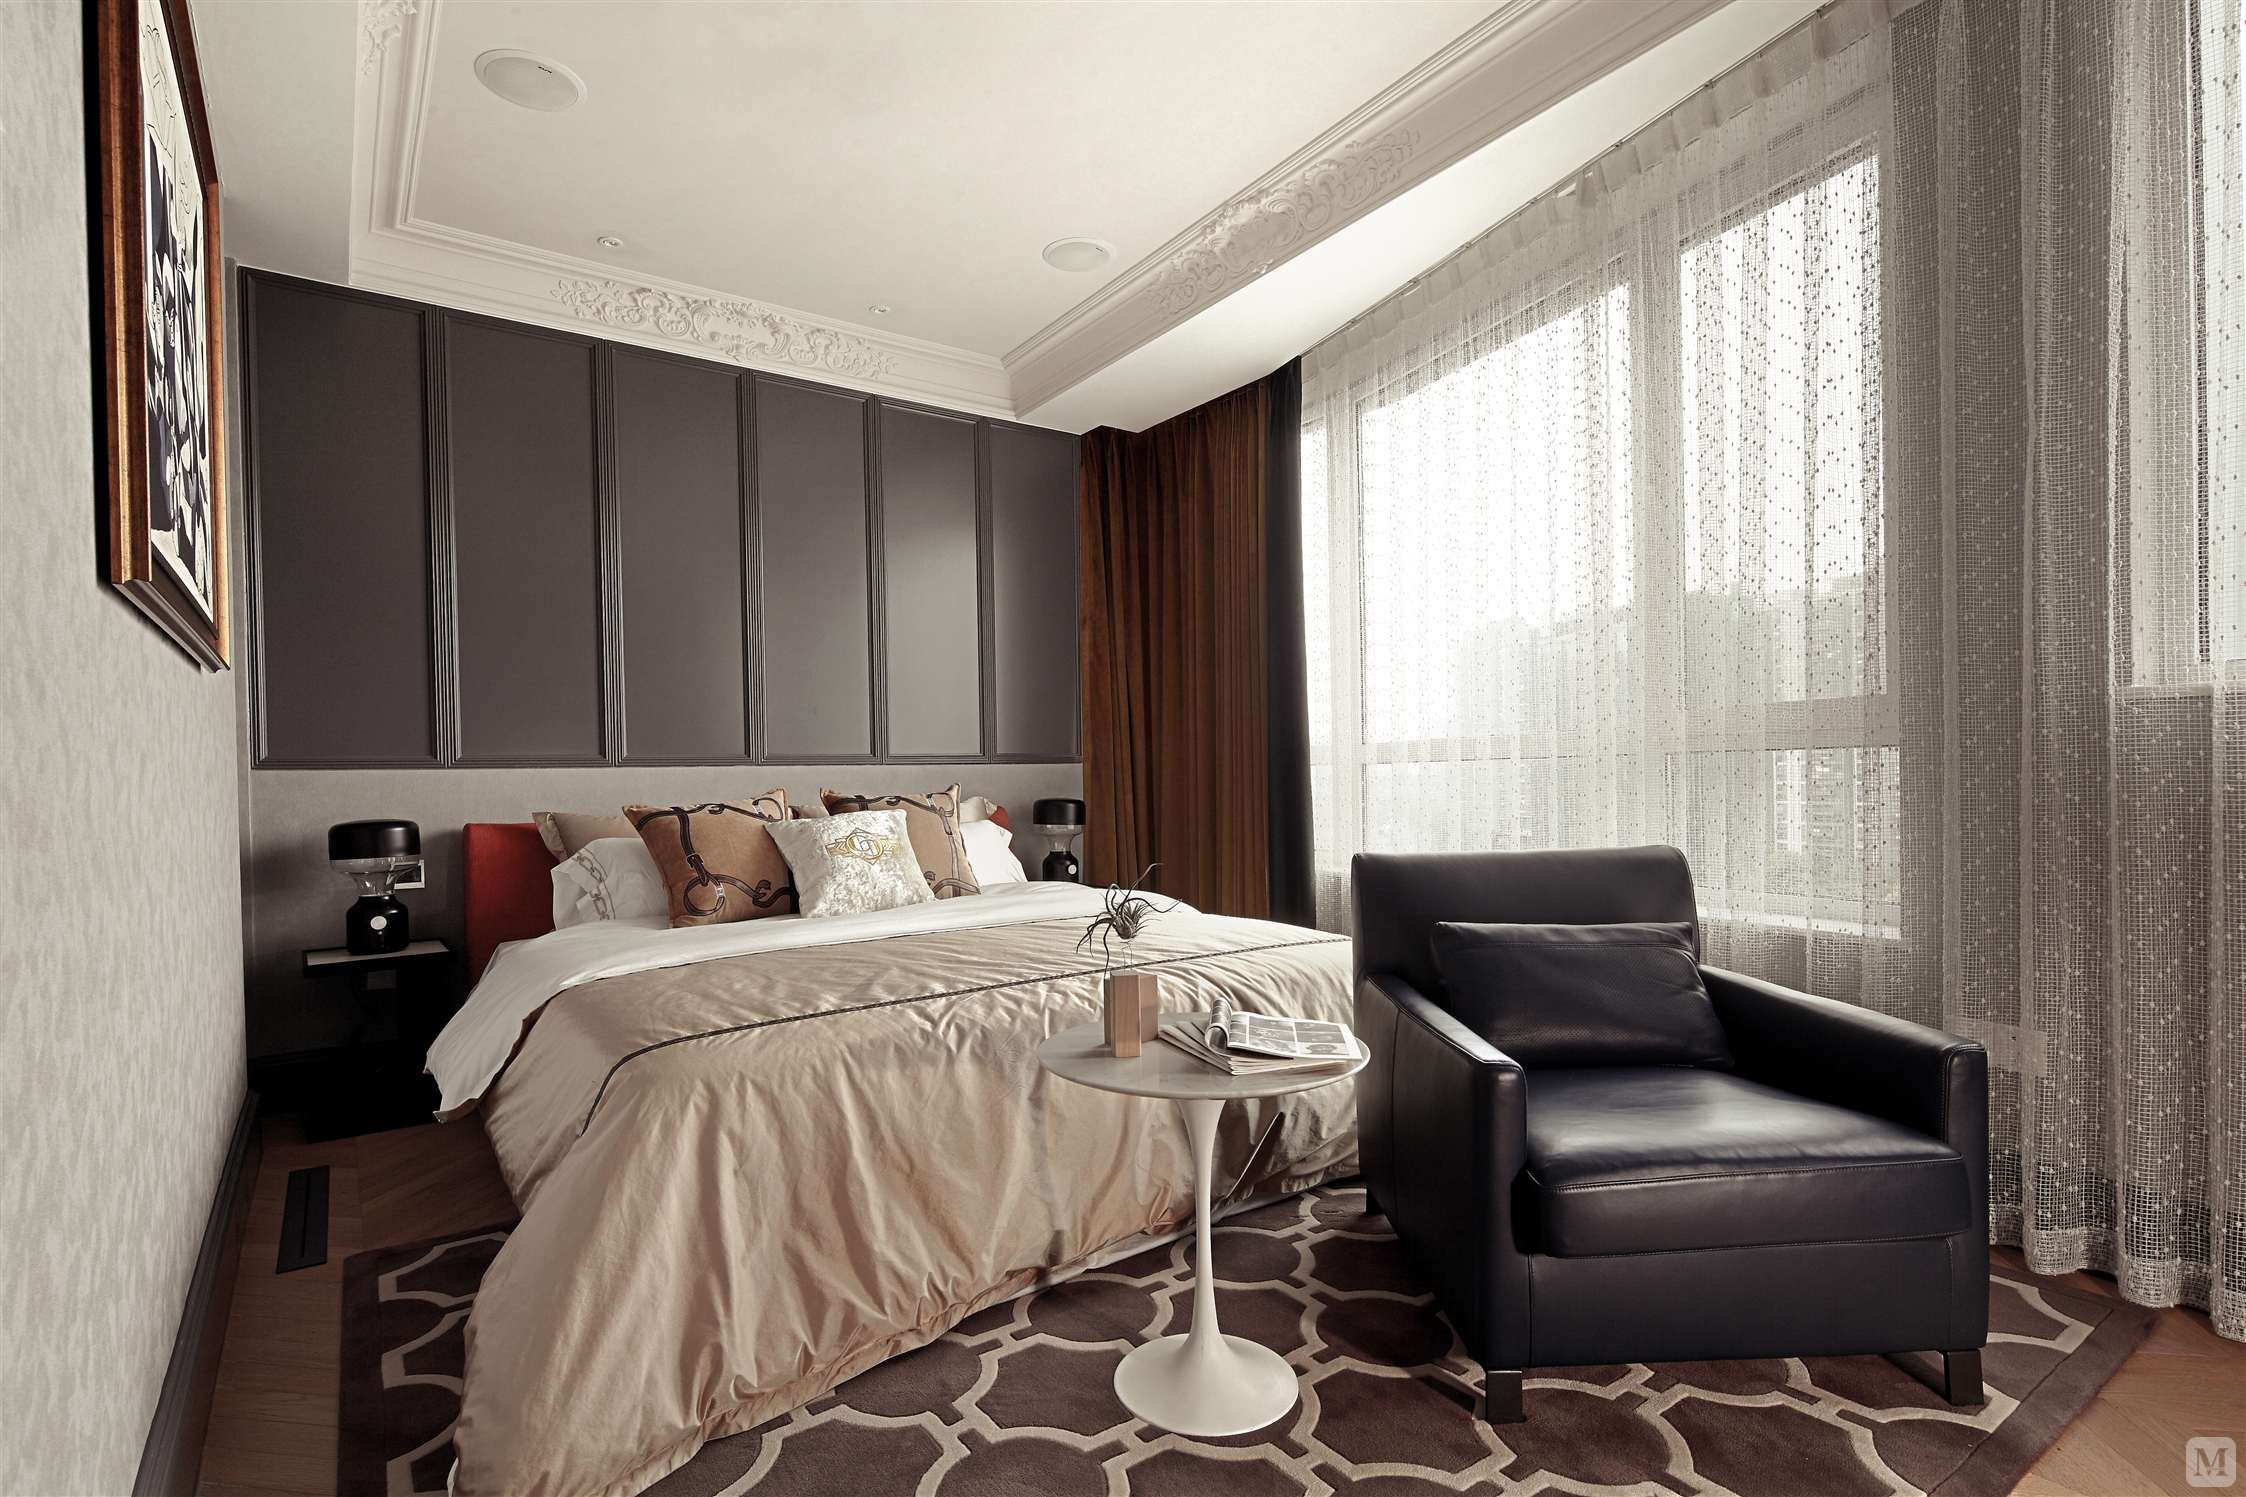 卧室床头背景墙，让这个空间更好的展现出绅士的高雅品格。
猛一看上去大气舒服，其实细看是很多细节的到位，灰色+米色+橙色，是最佳的组合。